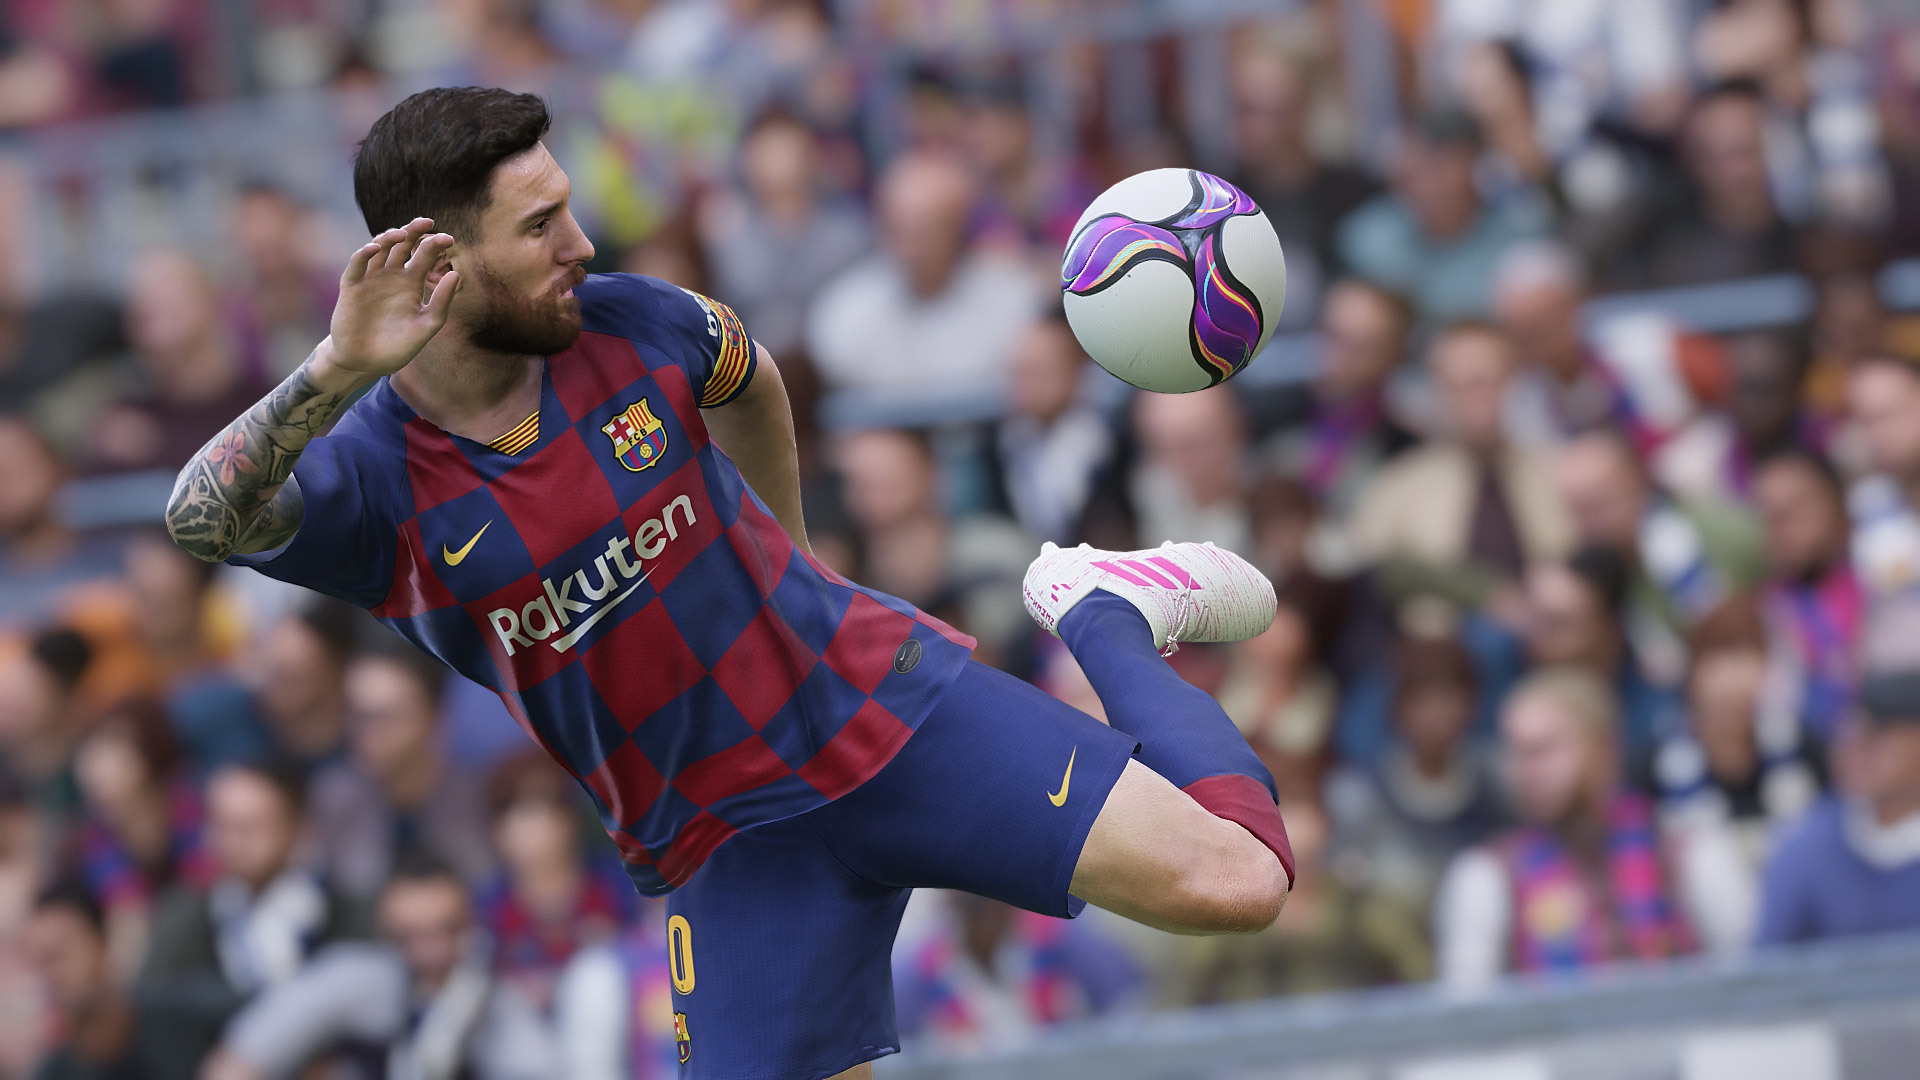 Imágenes de eFootball PES 2020 - GameSpot